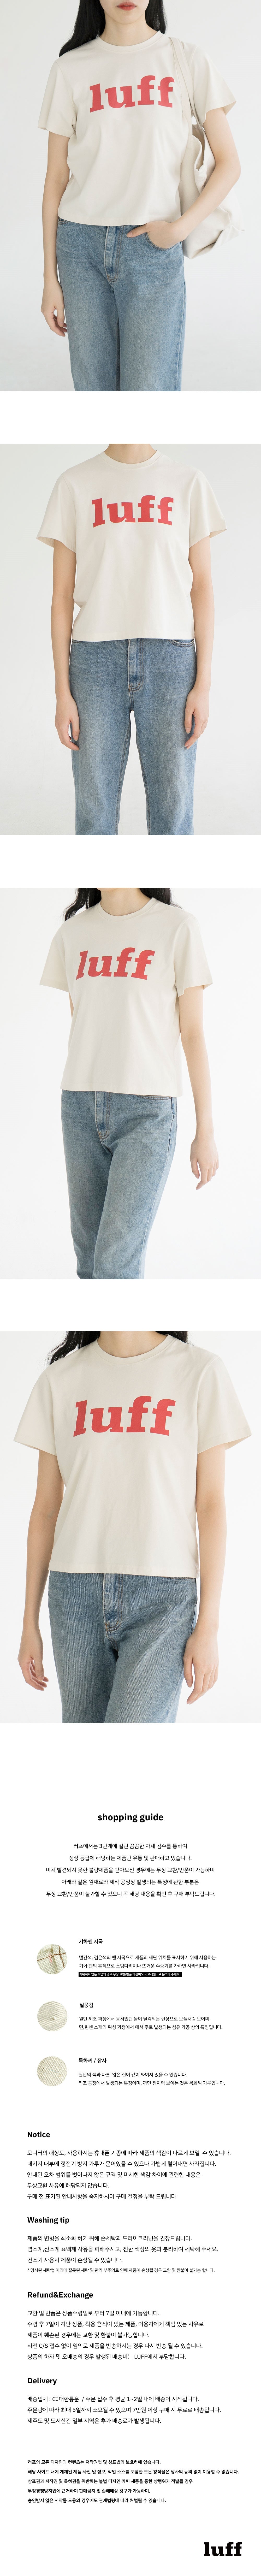 luff logo t-shirt - light beige